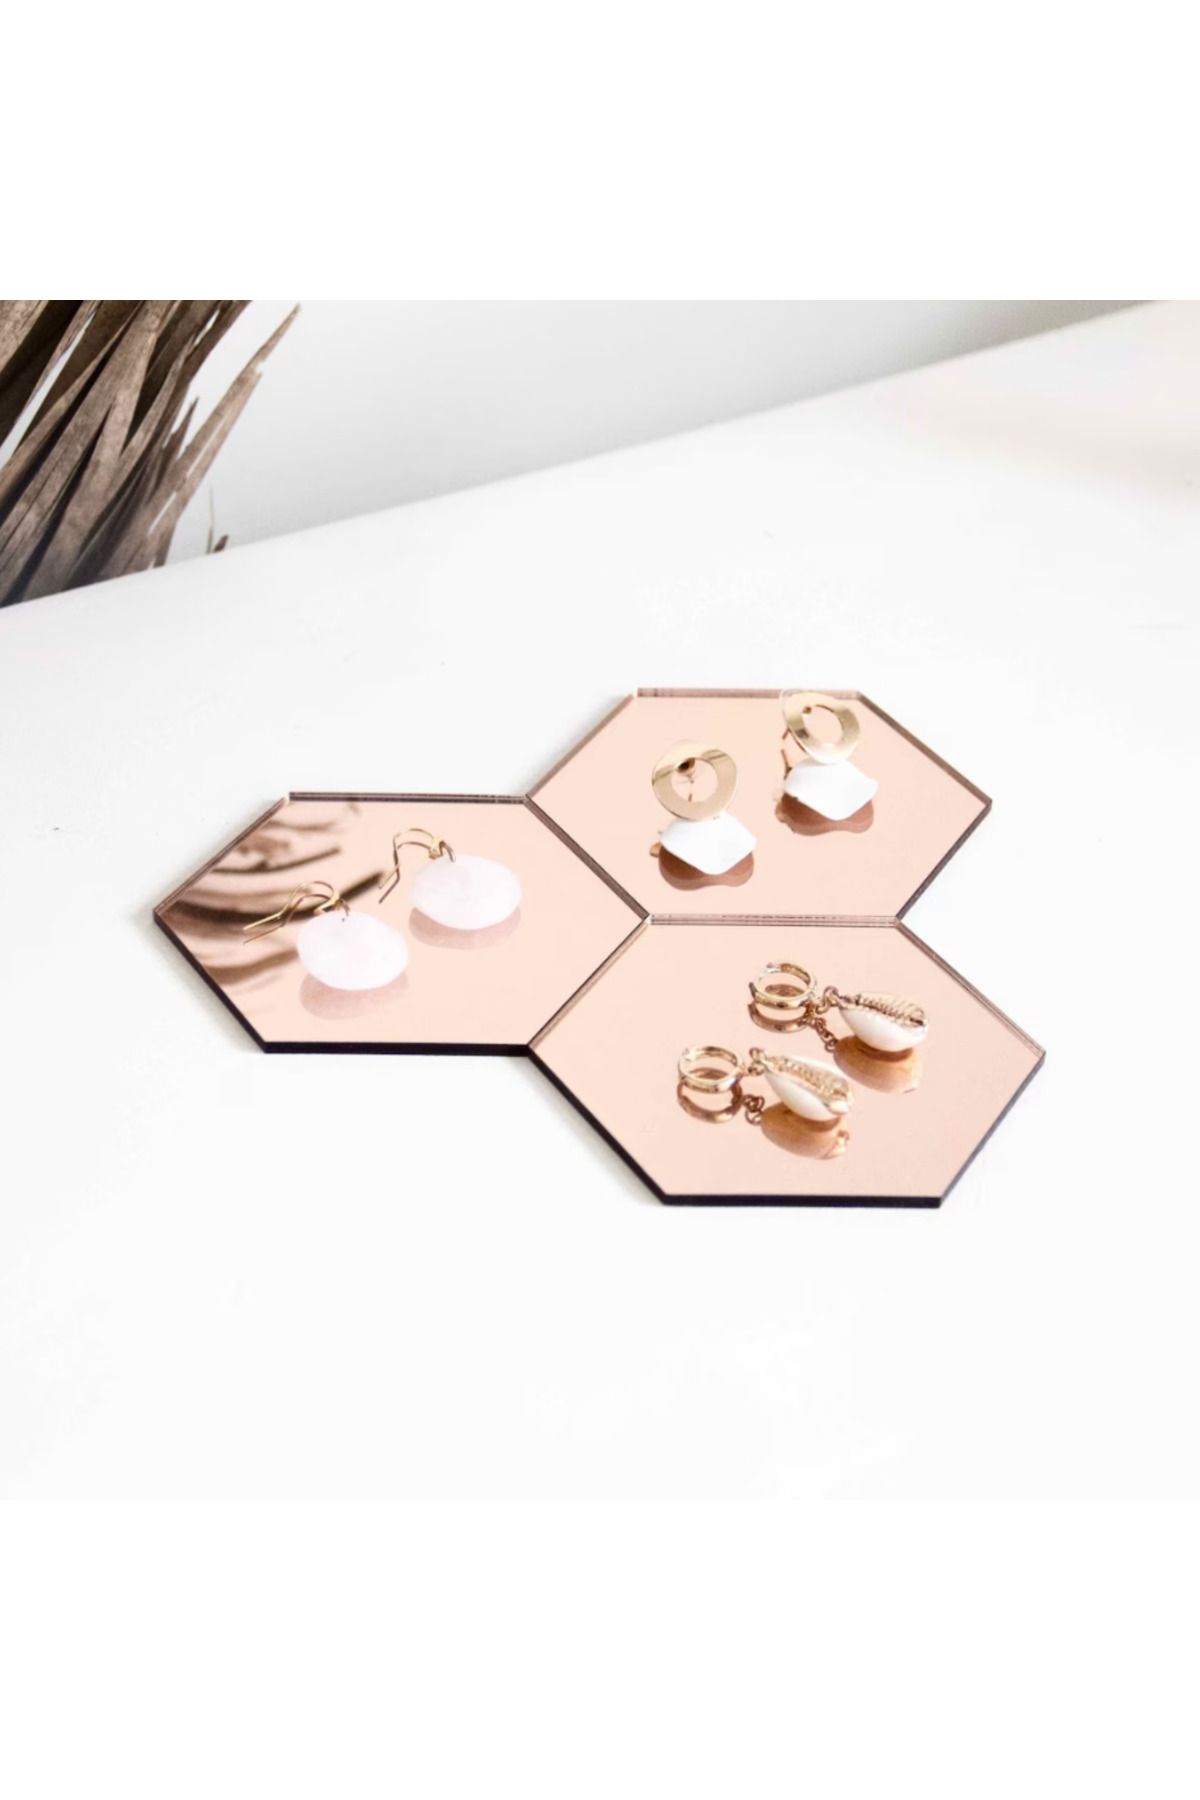 Kaya Store Hexagon 3'lü Rose Akrilik Ayna, Takı Tepsi, Ayna Akrilik Takı Altlıkları, Takı Çekim Standı